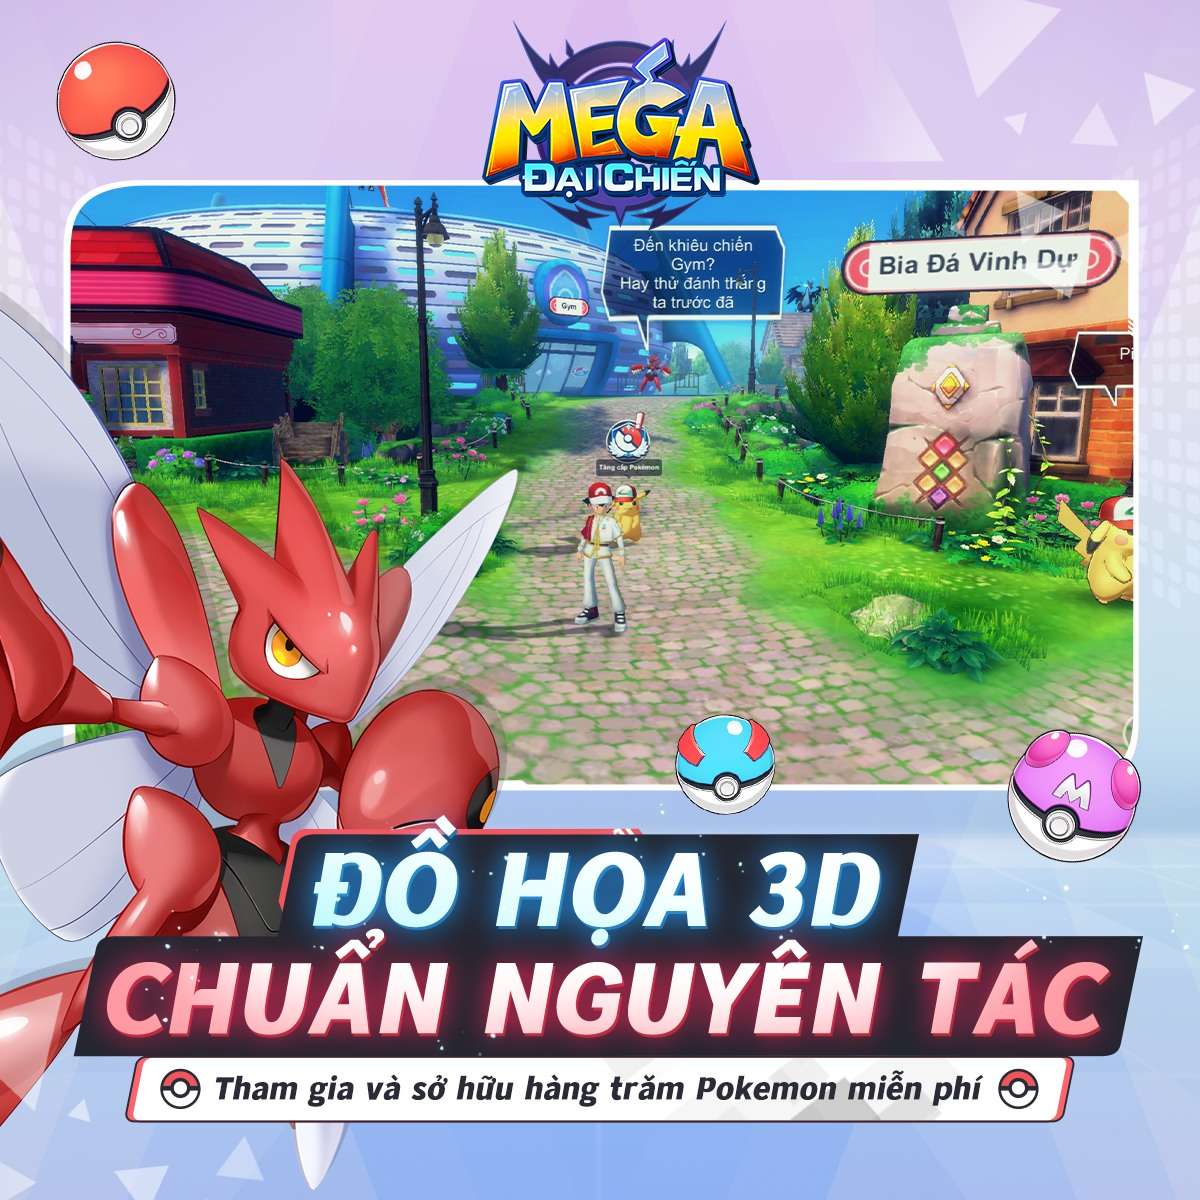 Game 3D giao dịch trực tiếp Pokemon đầu tiên tại Việt Nam  Mega Đại Chiến  chính thức ra mắt